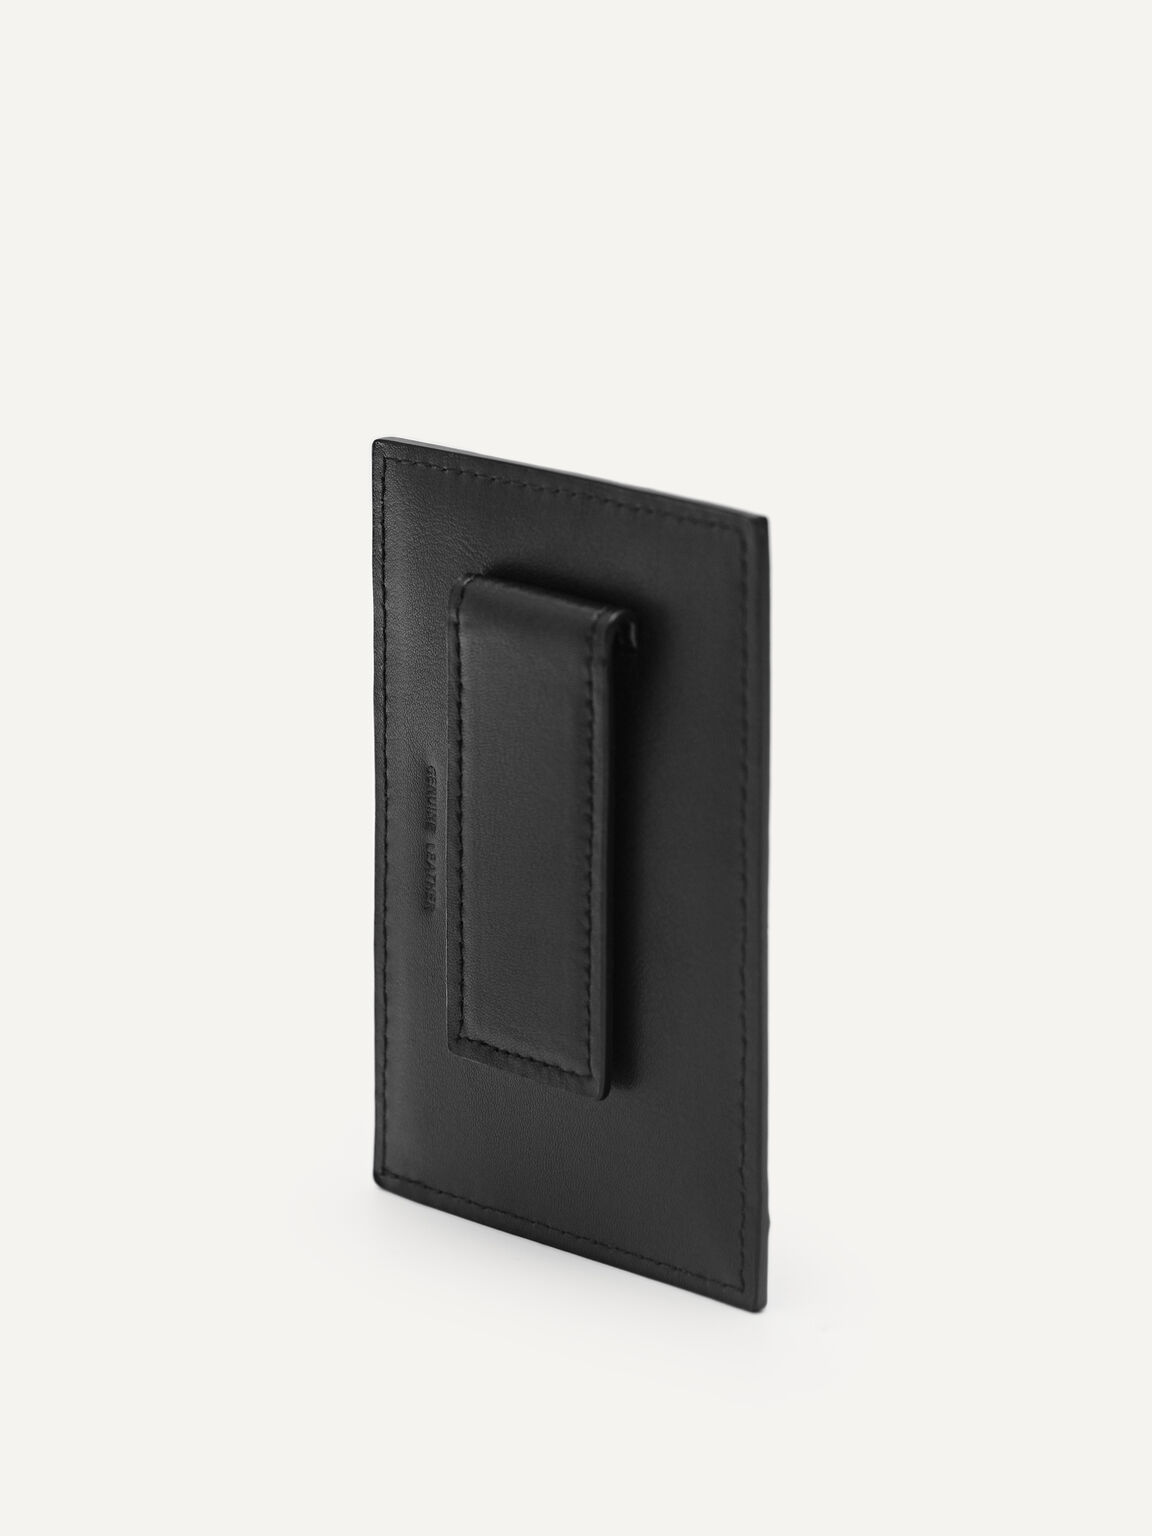 Leather Card Holder, Black